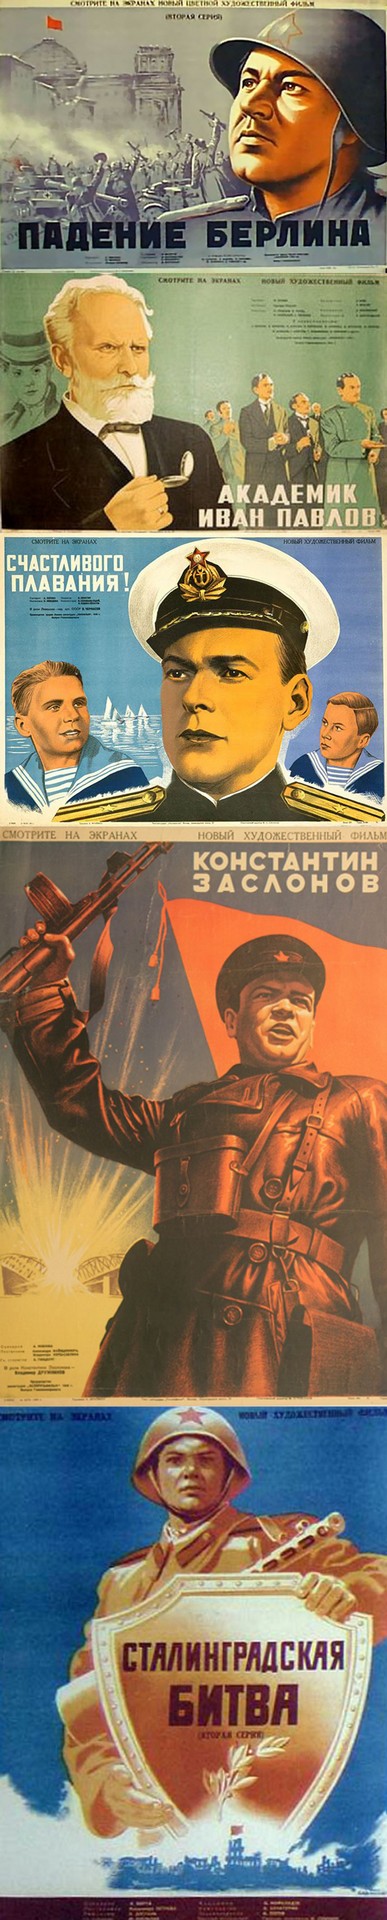 Плакаты-к-Сталинской 1950